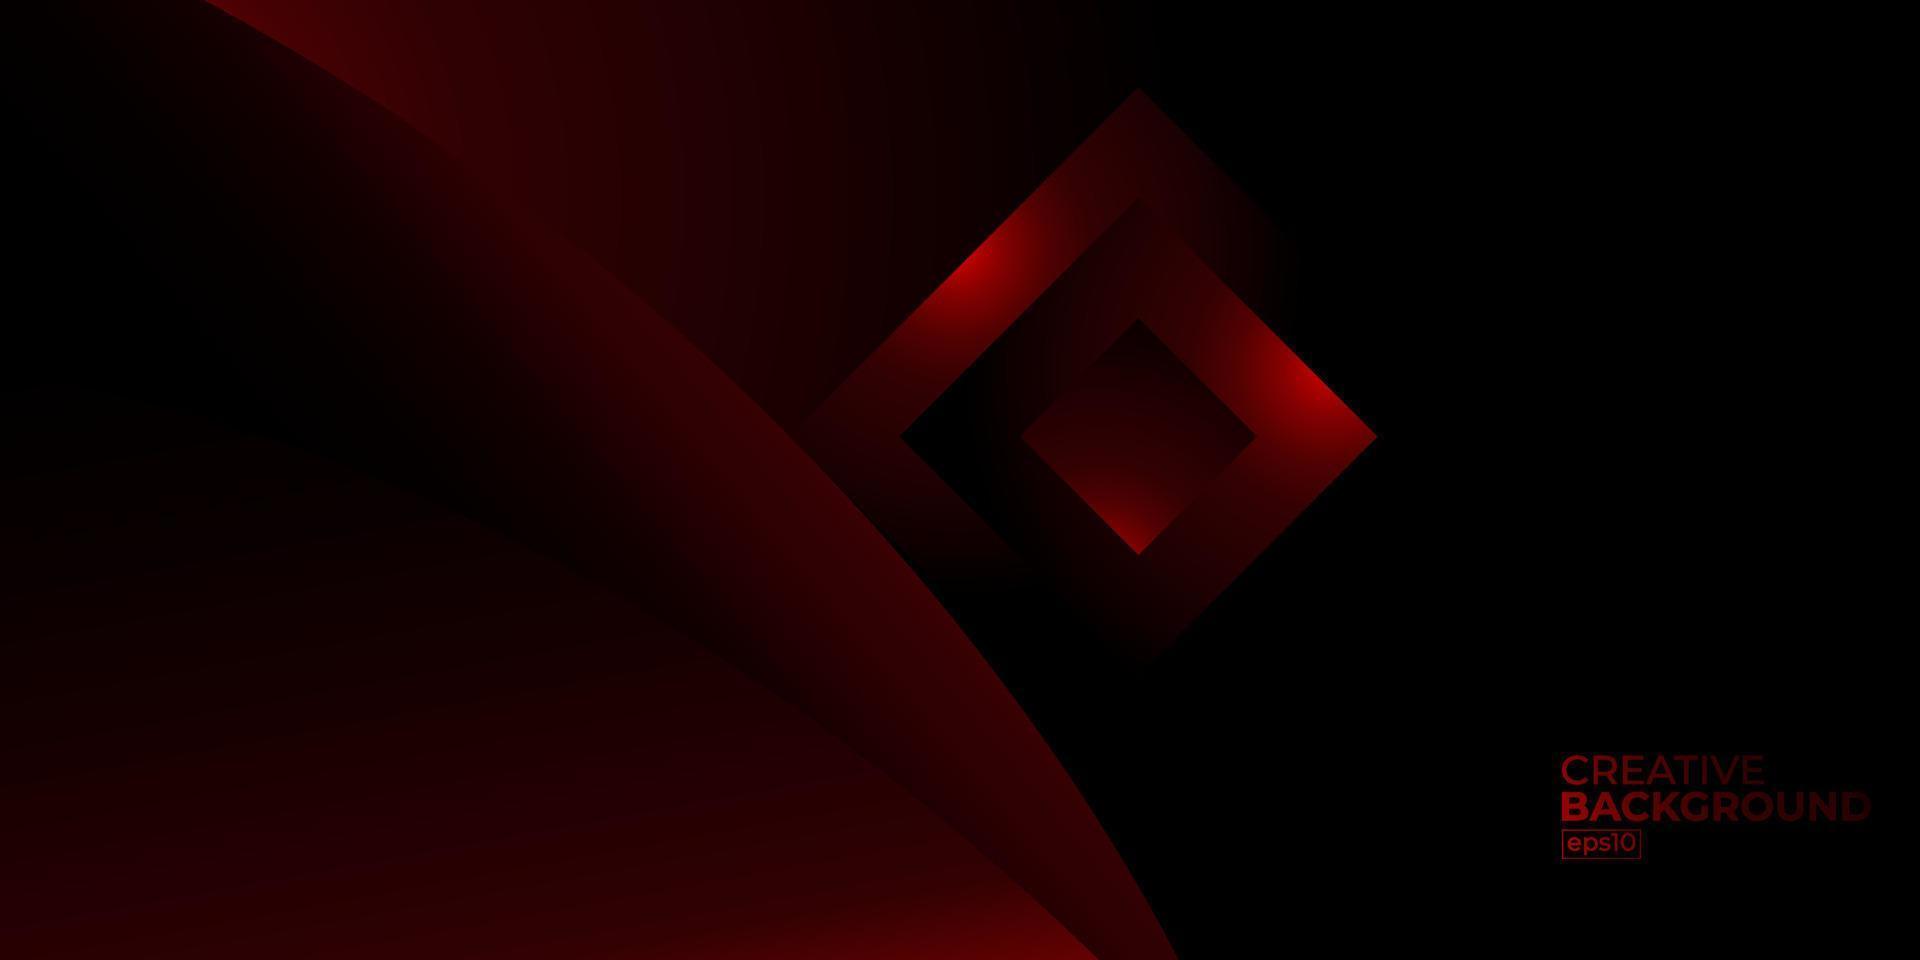 premium lujo abstracto rojo y negro con el degradado es la textura de metal de pared de piso diseño de fondo de tecnología suave ilustración vectorial para sitio web, póster, folleto, plantilla de presentación, etc. vector